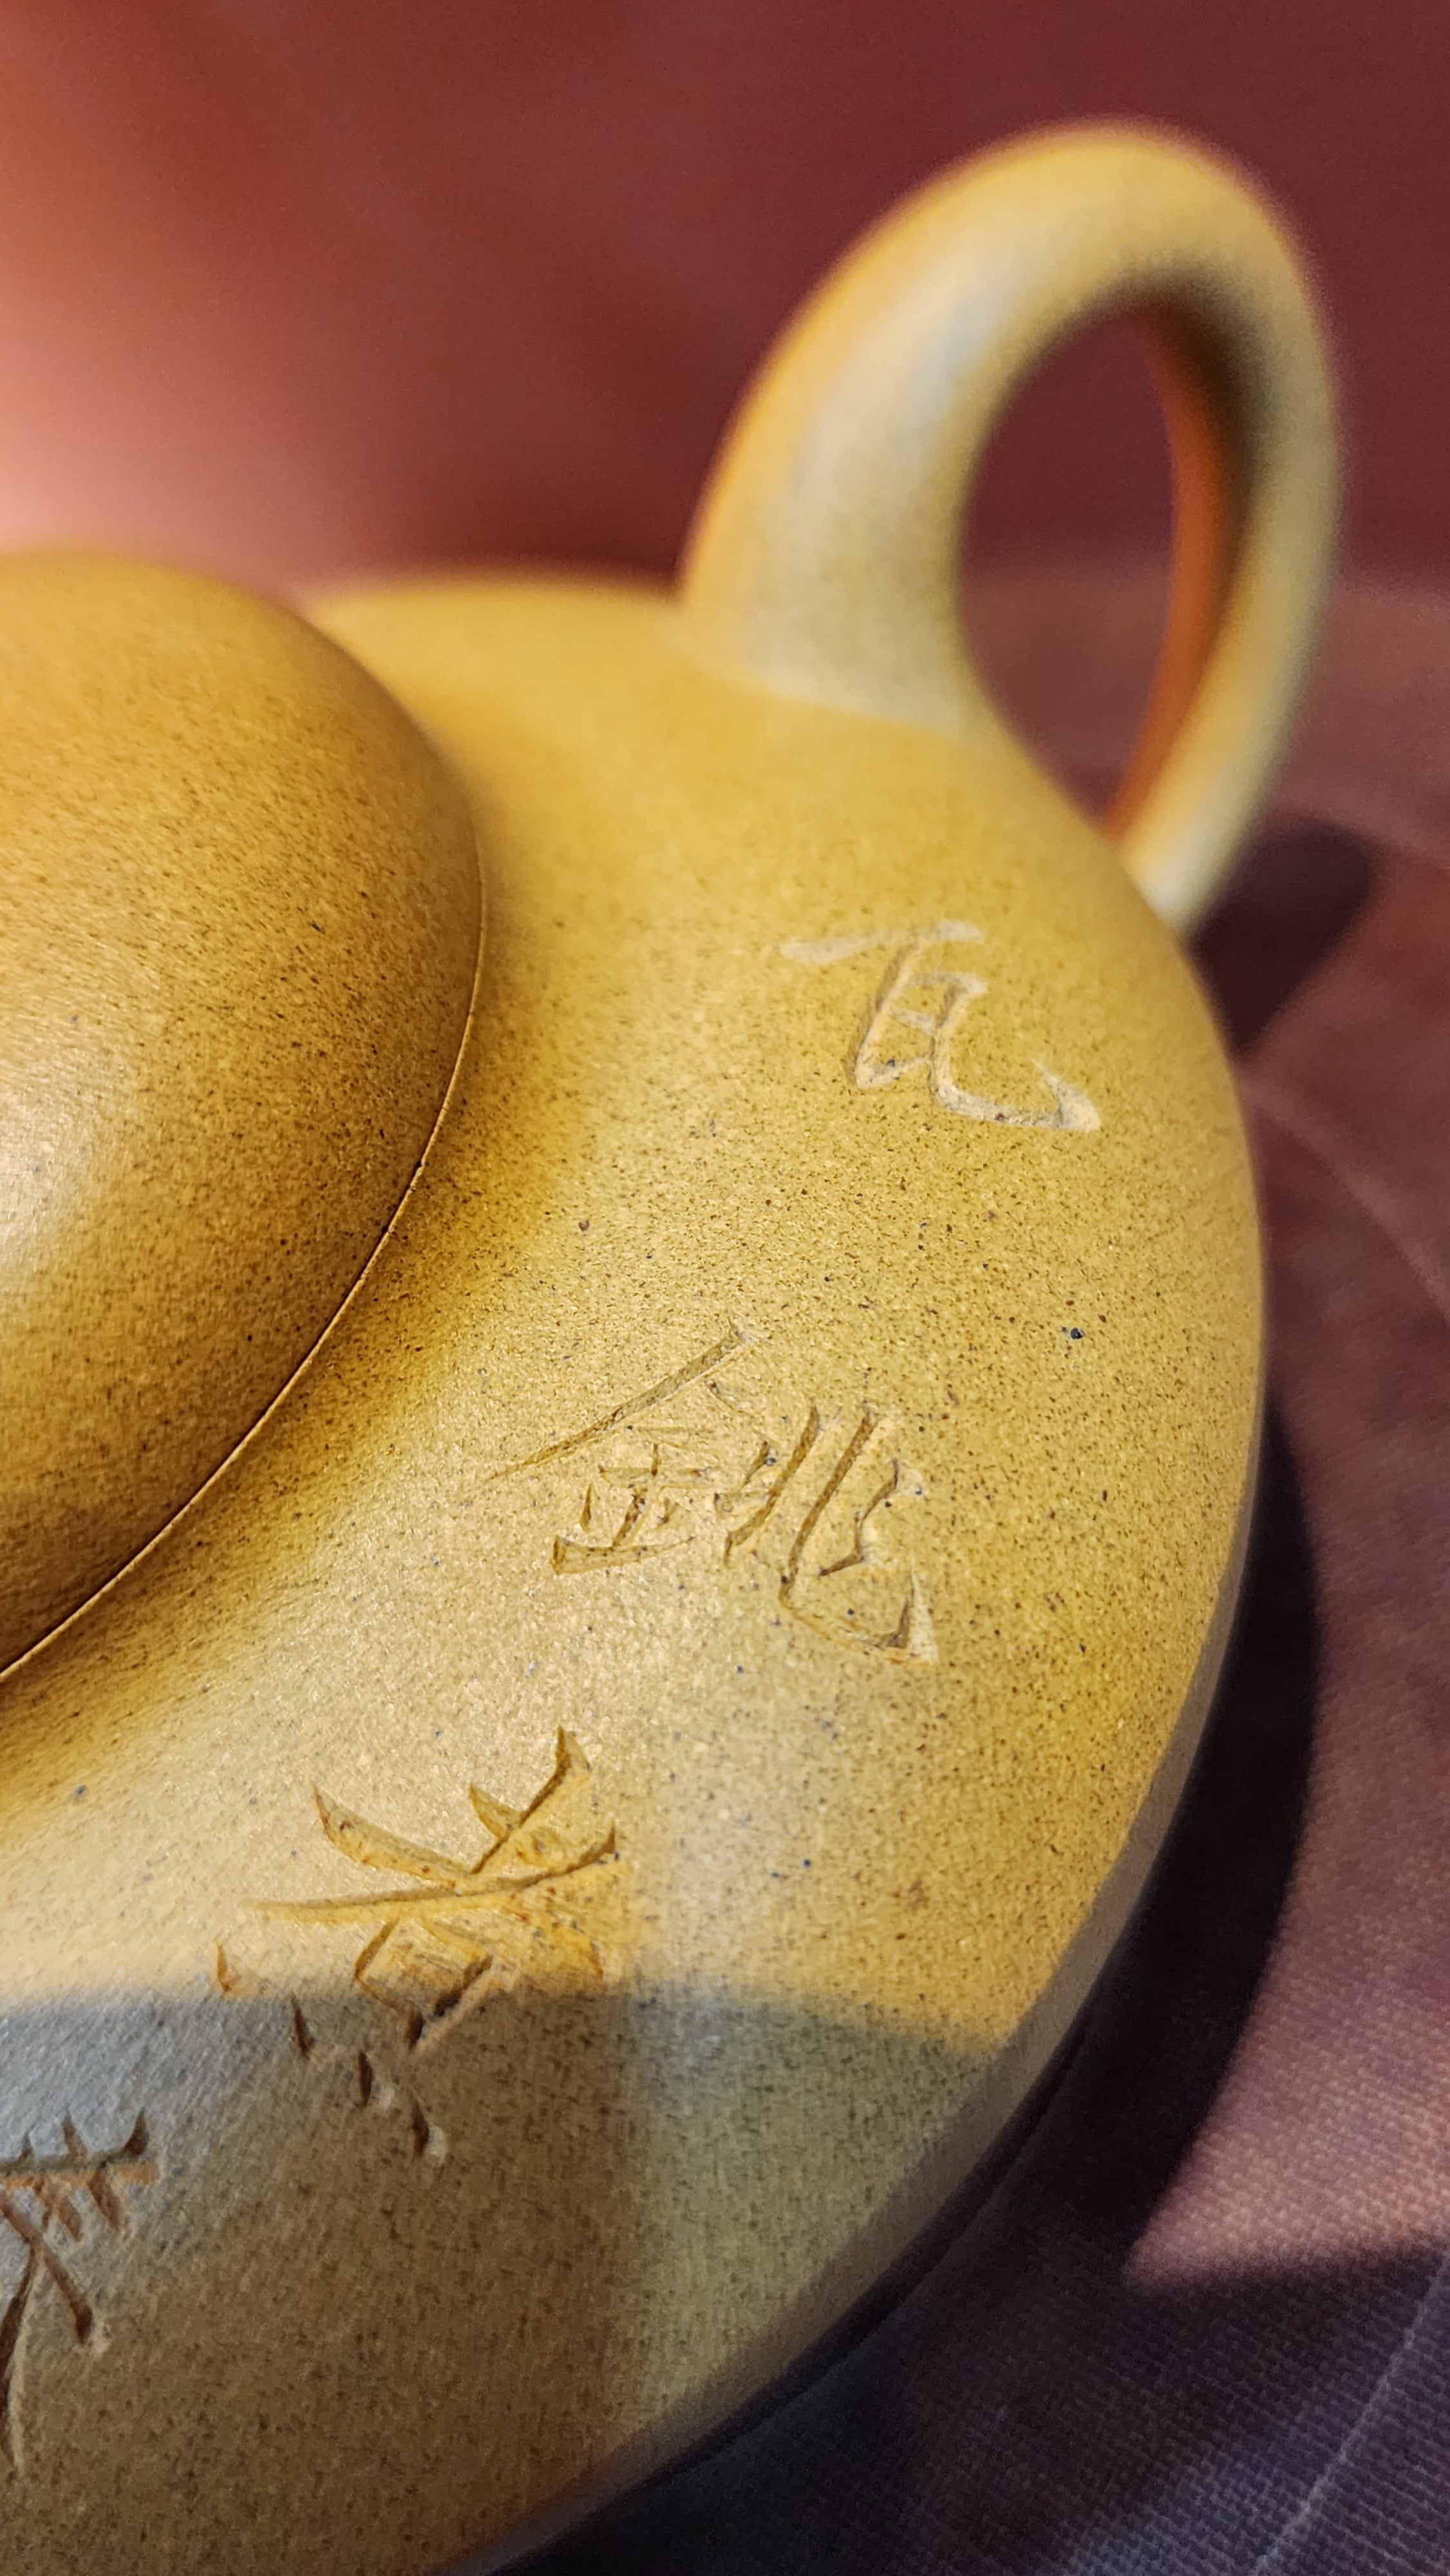 He Huan 合欢, 195.1ml, Huang Jin Duan Ni 黄金段泥, by our Craftsman Wang Jian Long 王建龙。